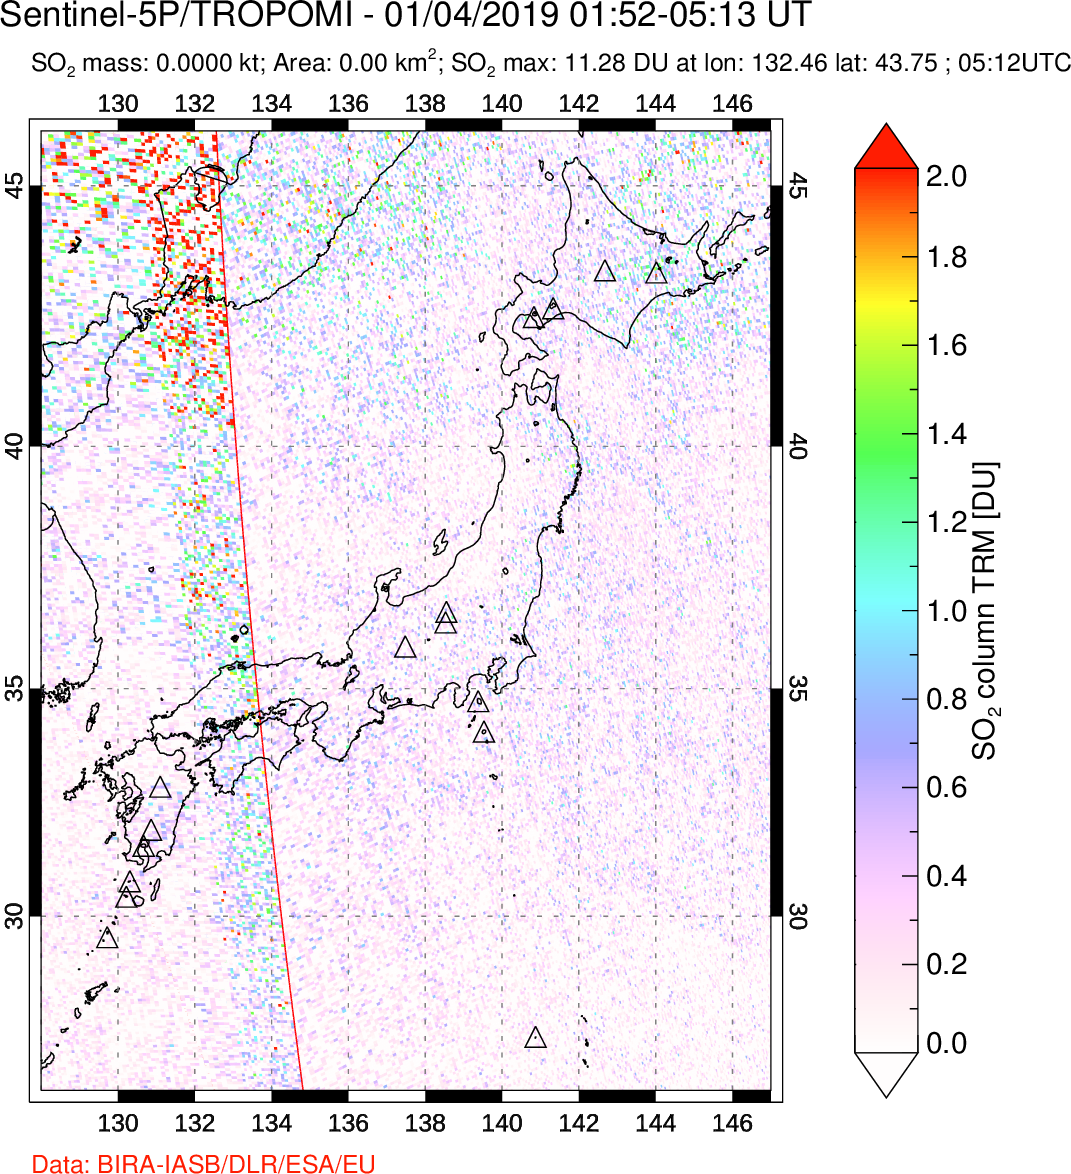 A sulfur dioxide image over Japan on Jan 04, 2019.